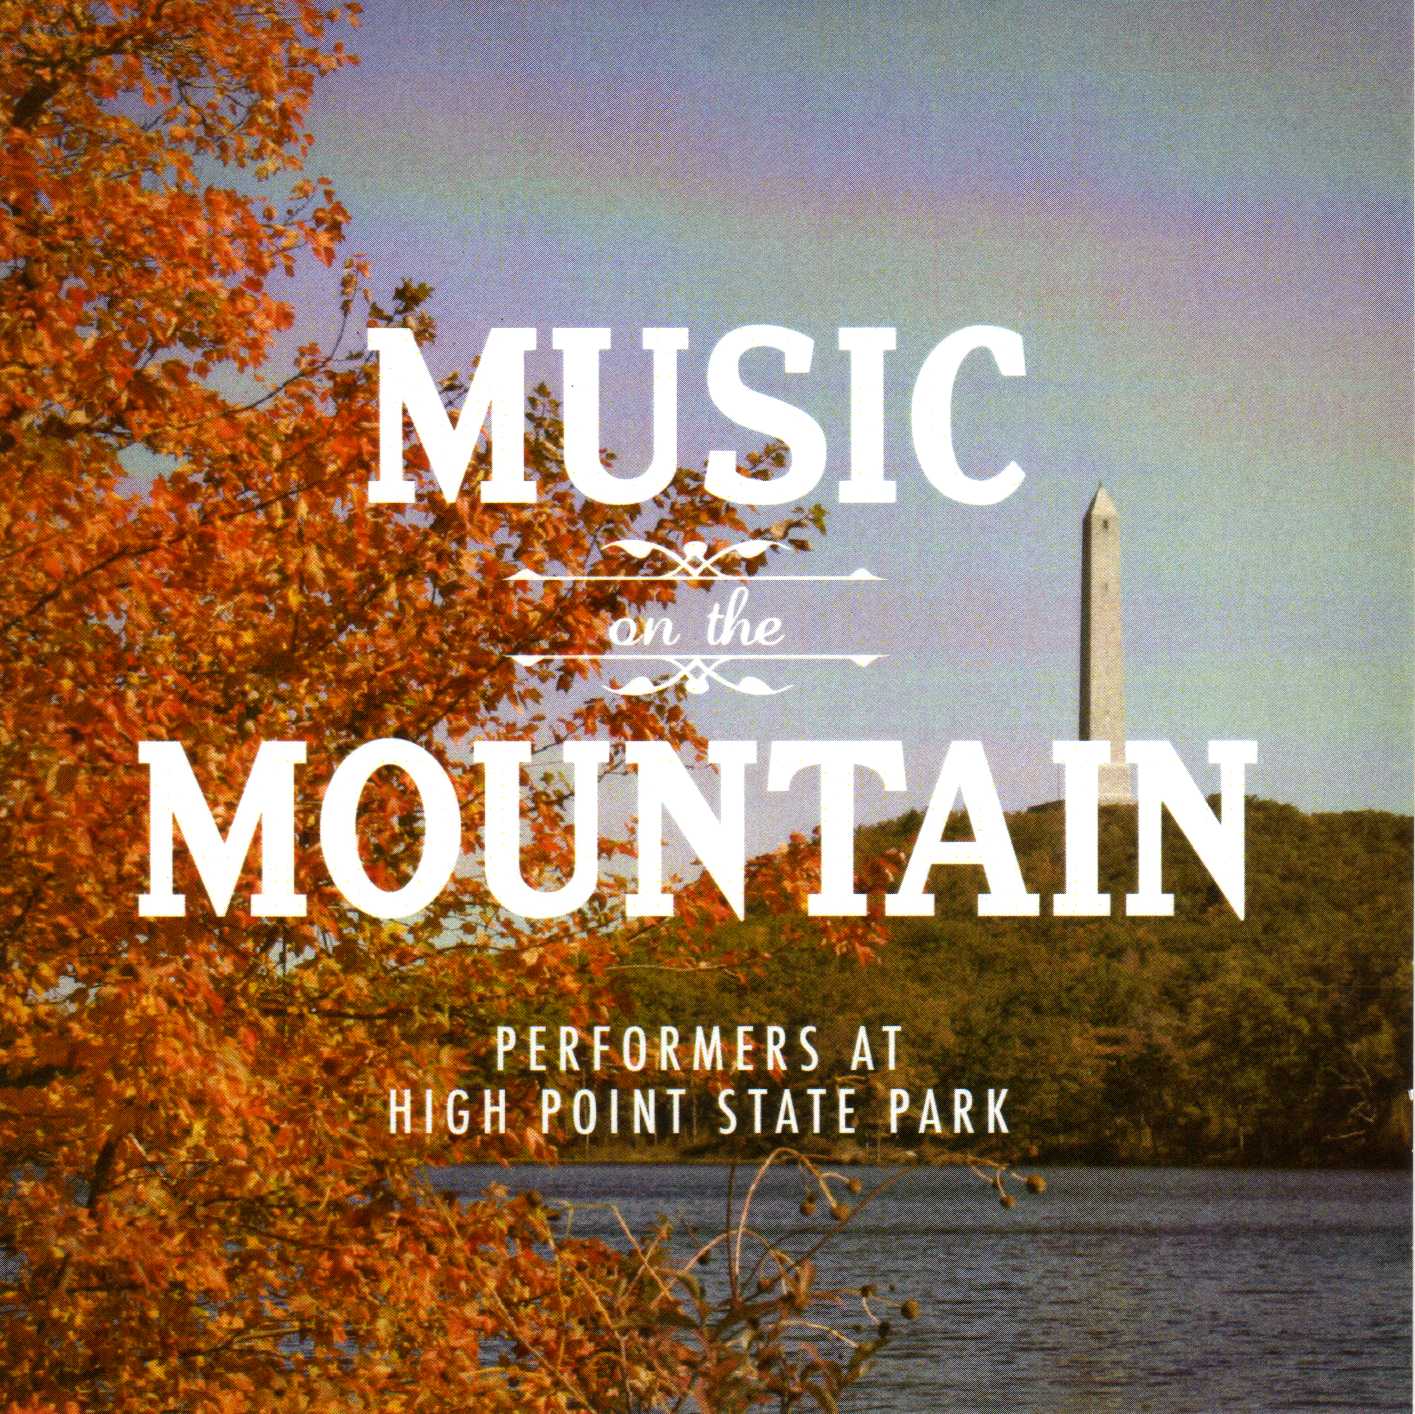 http://friendshighpointstatepark.blogspot.com/p/music-on-mountain-cd.html